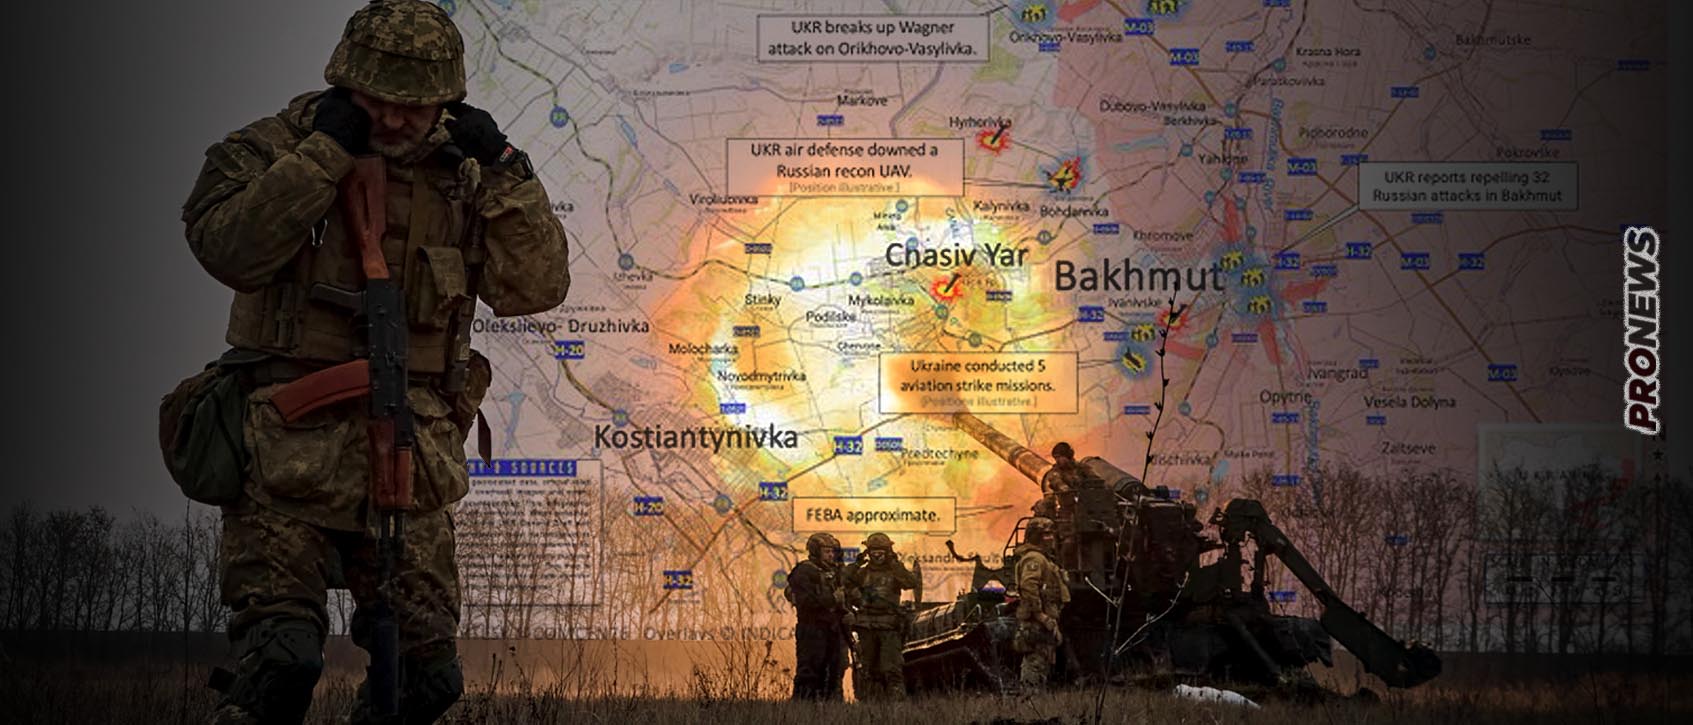 Οι Ρώσοι κατέλαβαν το Στουπόβσκι στην είσοδο του Τσάσιβ Γιαρ – Σφοδροί αεροπορικοί βομβαρδισμοί σε Αντίιβκα και Ούγκλενταρ (βίντεο)